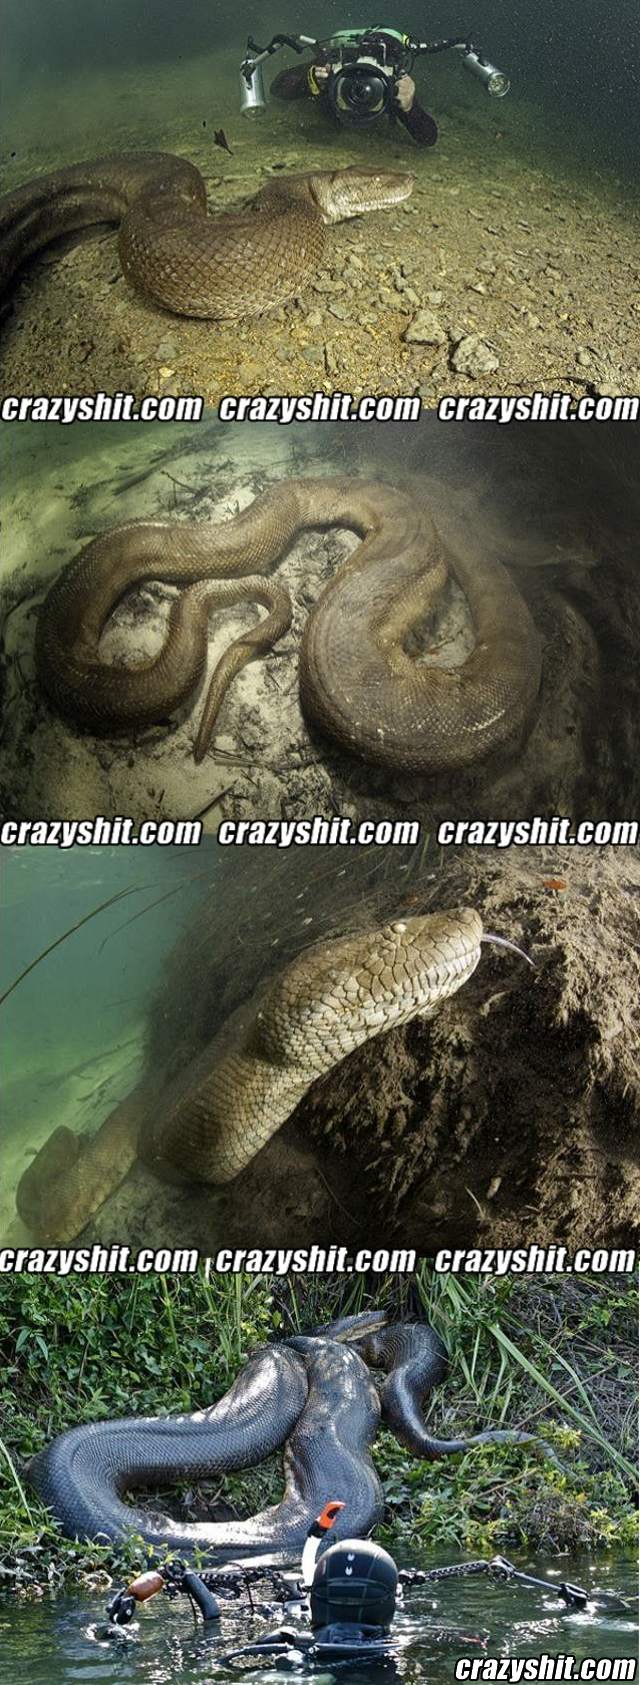 That's a big-ass snake!